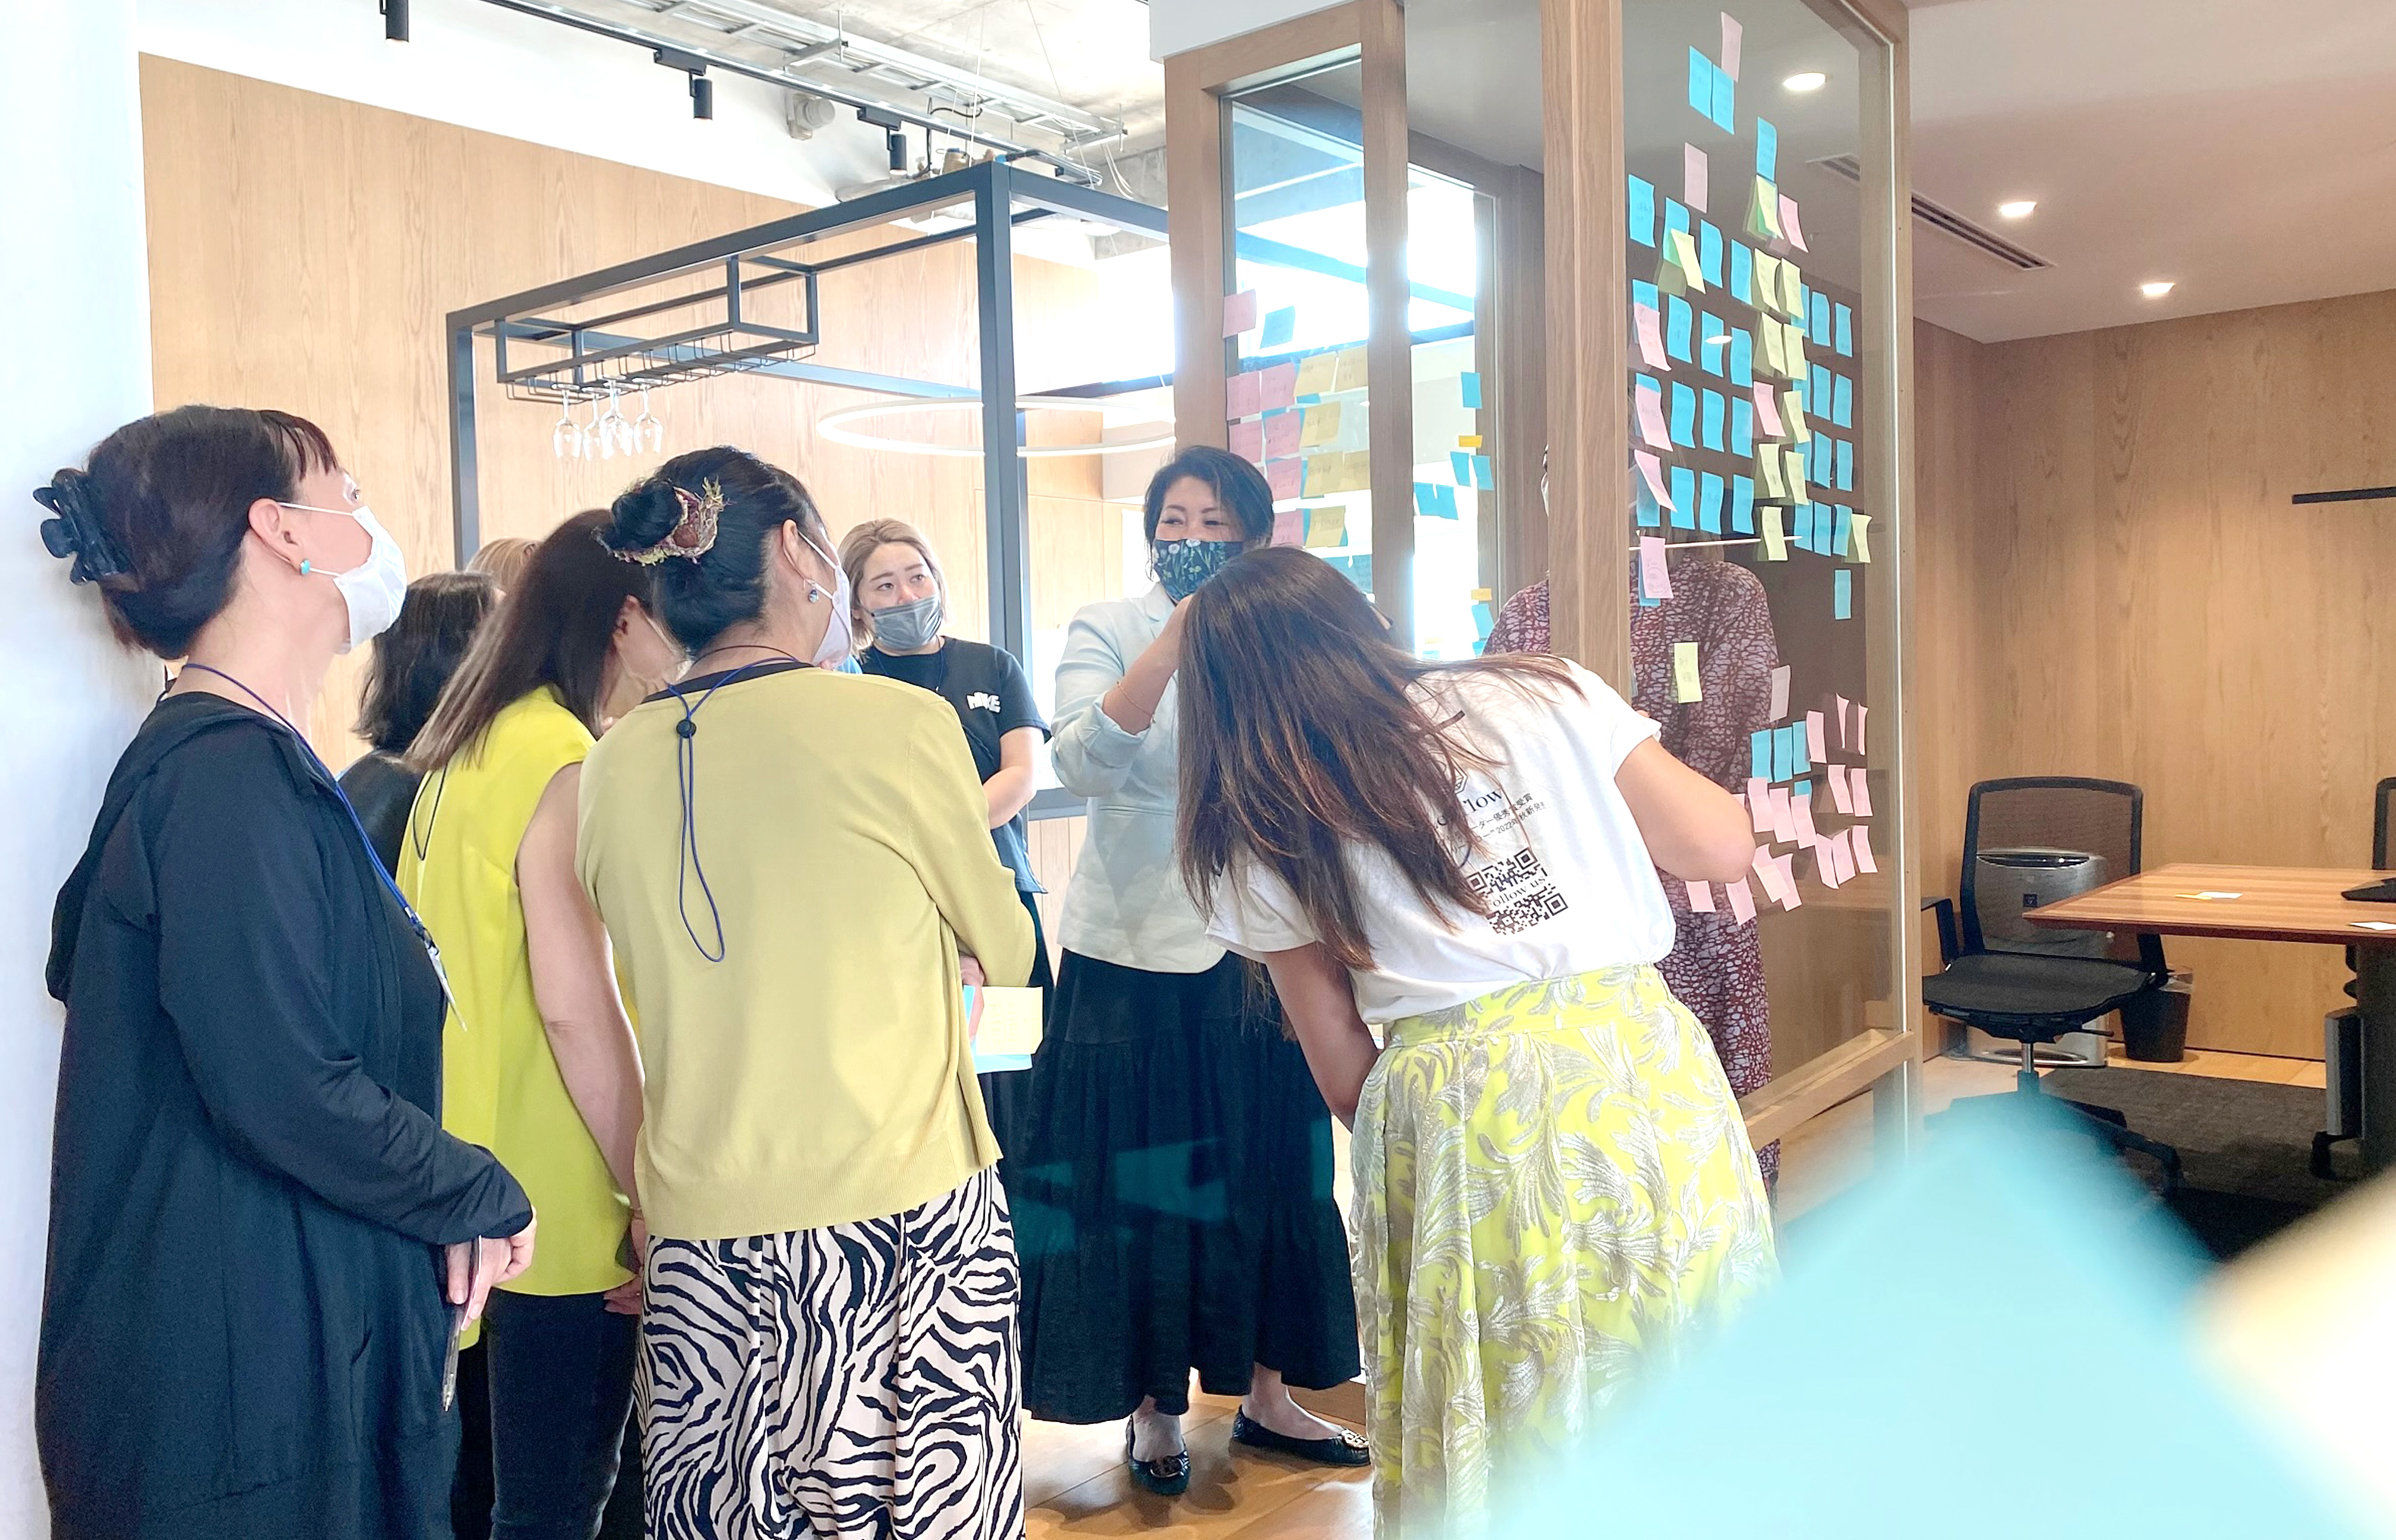 横浜市連携 女性起業家向けプログラム「Amelias 起業サミット」